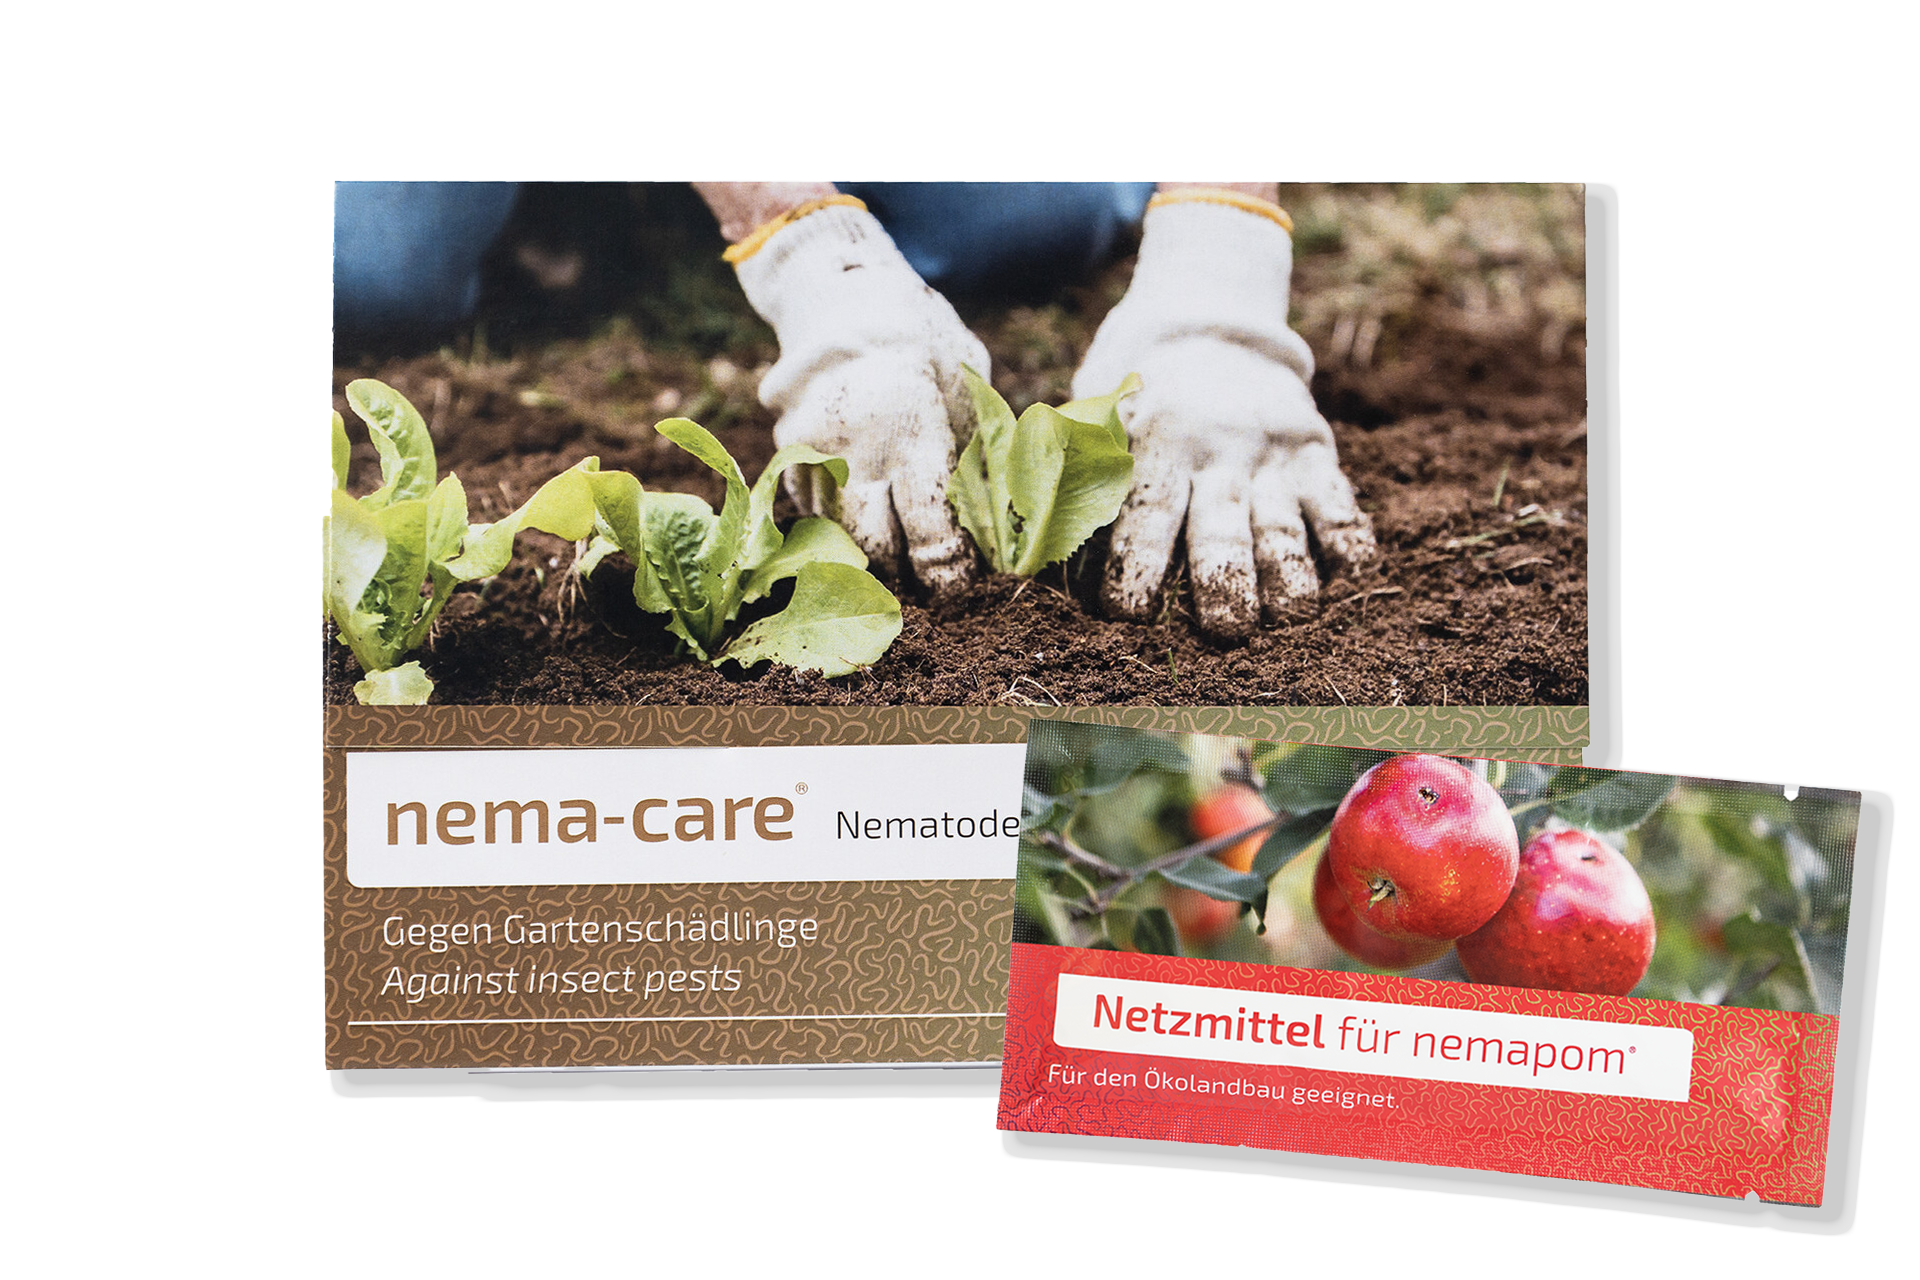 nema-care® Raupenfrei enthält unser Produkt nema-care und ein Netzmittel